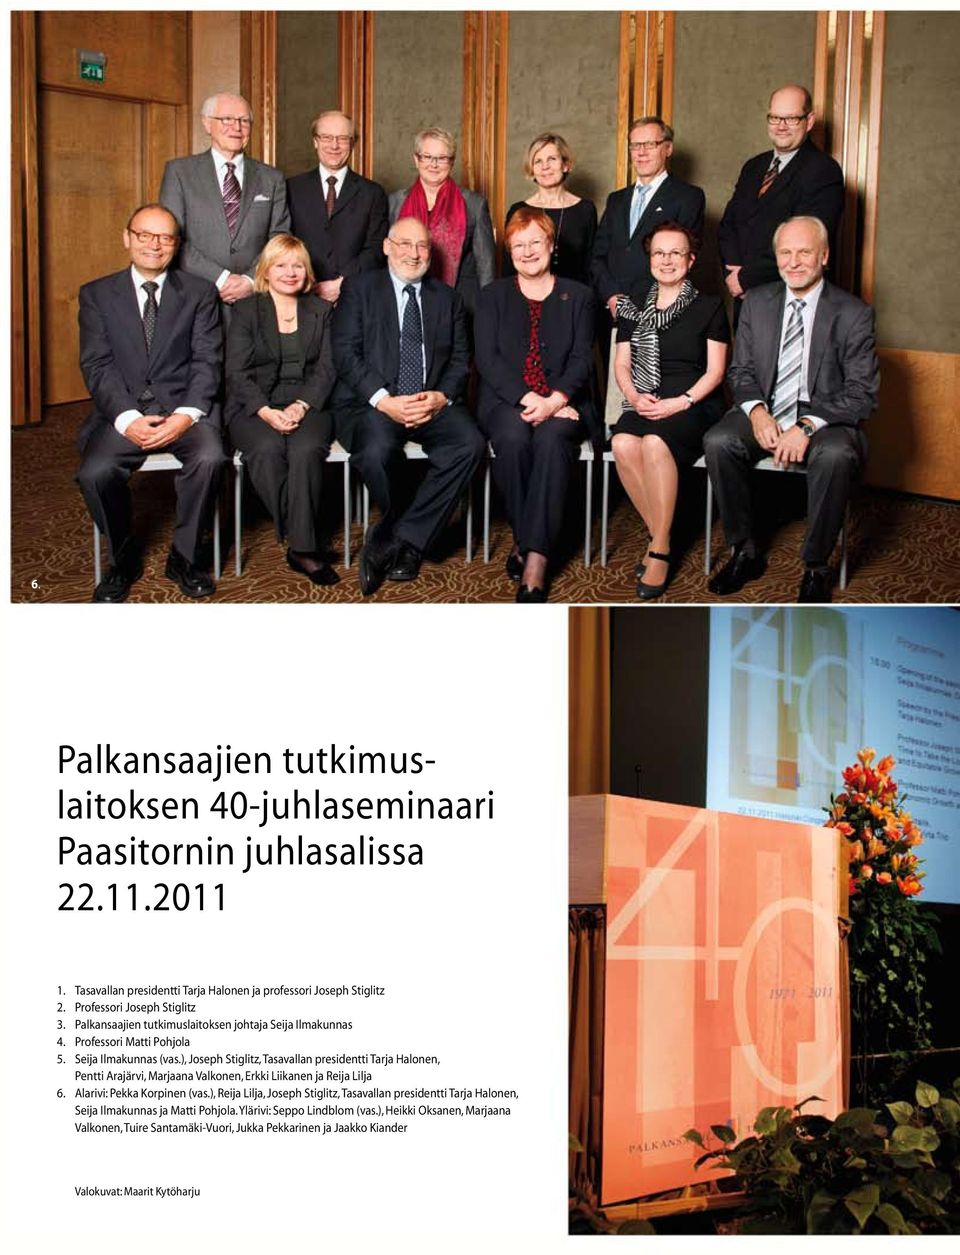 ), Joseph Stiglitz, Tasavallan presidentti Tarja Halonen, Pentti Arajärvi, Marjaana Valkonen, Erkki Liikanen ja Reija Lilja 6. Alarivi: Pekka Korpinen (vas.